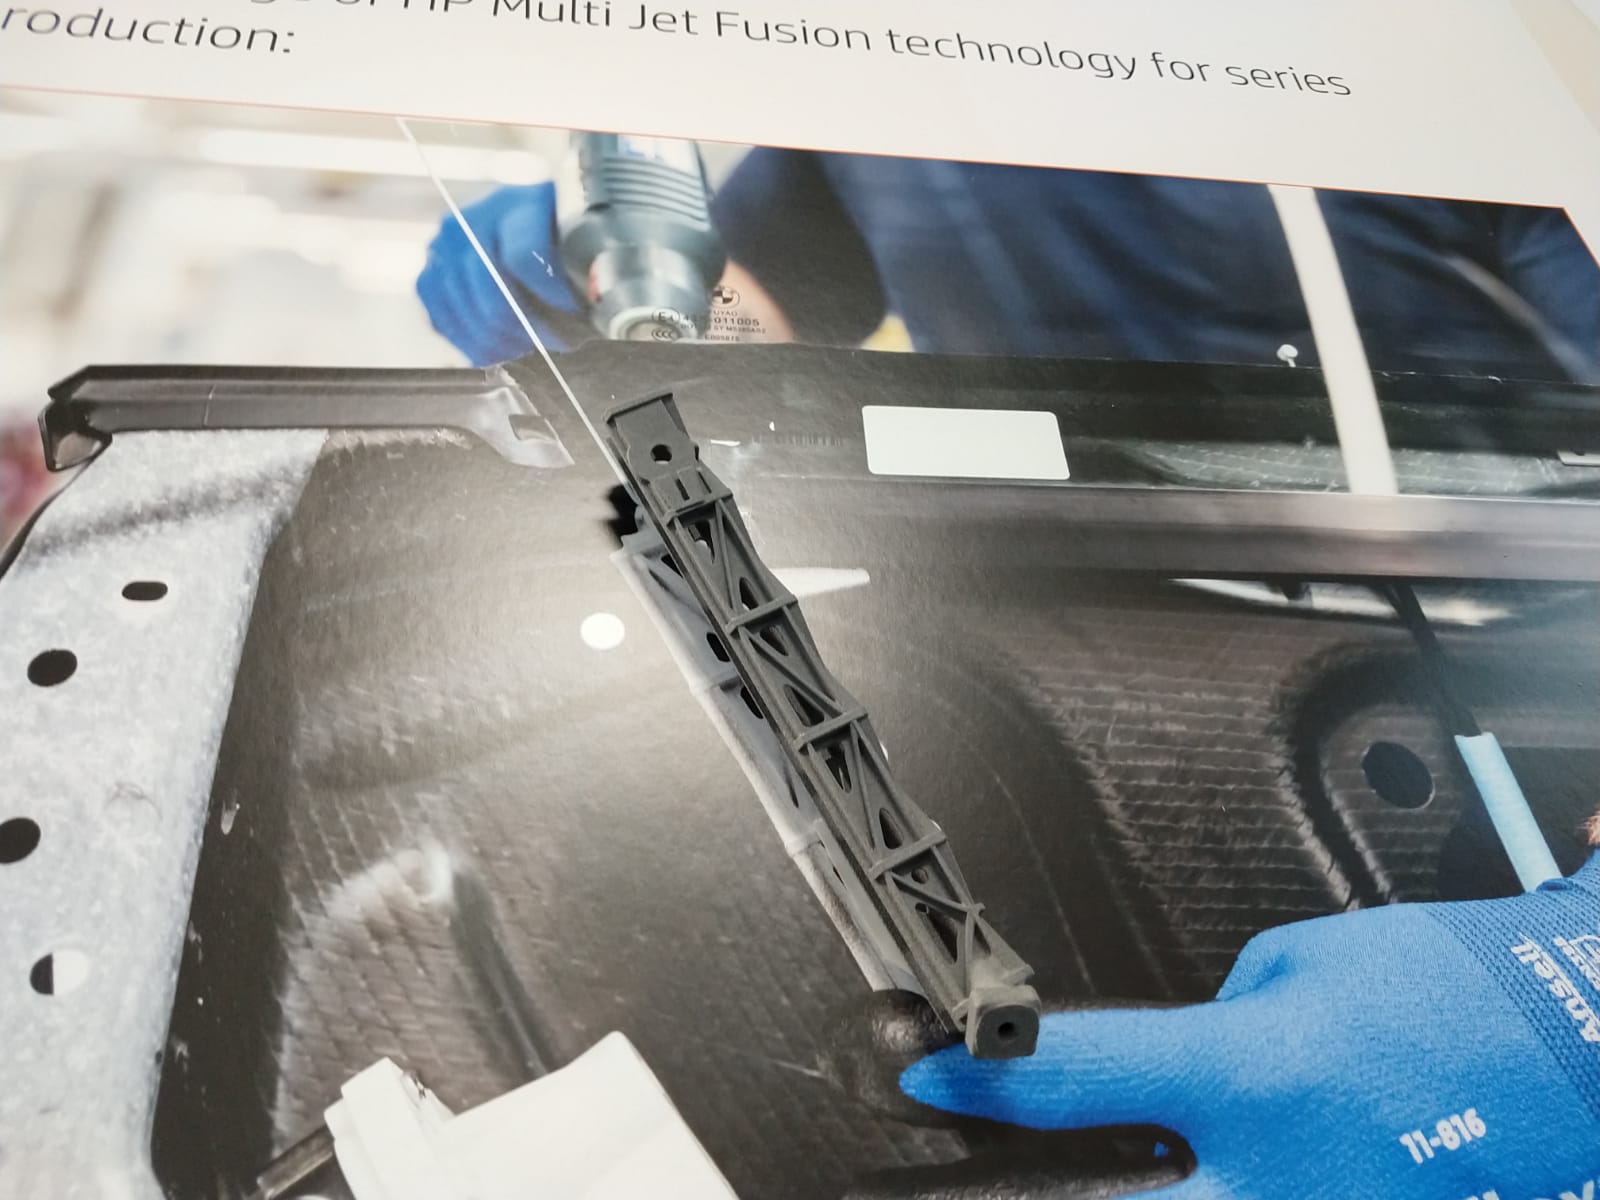 BMW i8 Roadster的最终使用3D打印挡风玻璃指南。Tia Vialva摄影。